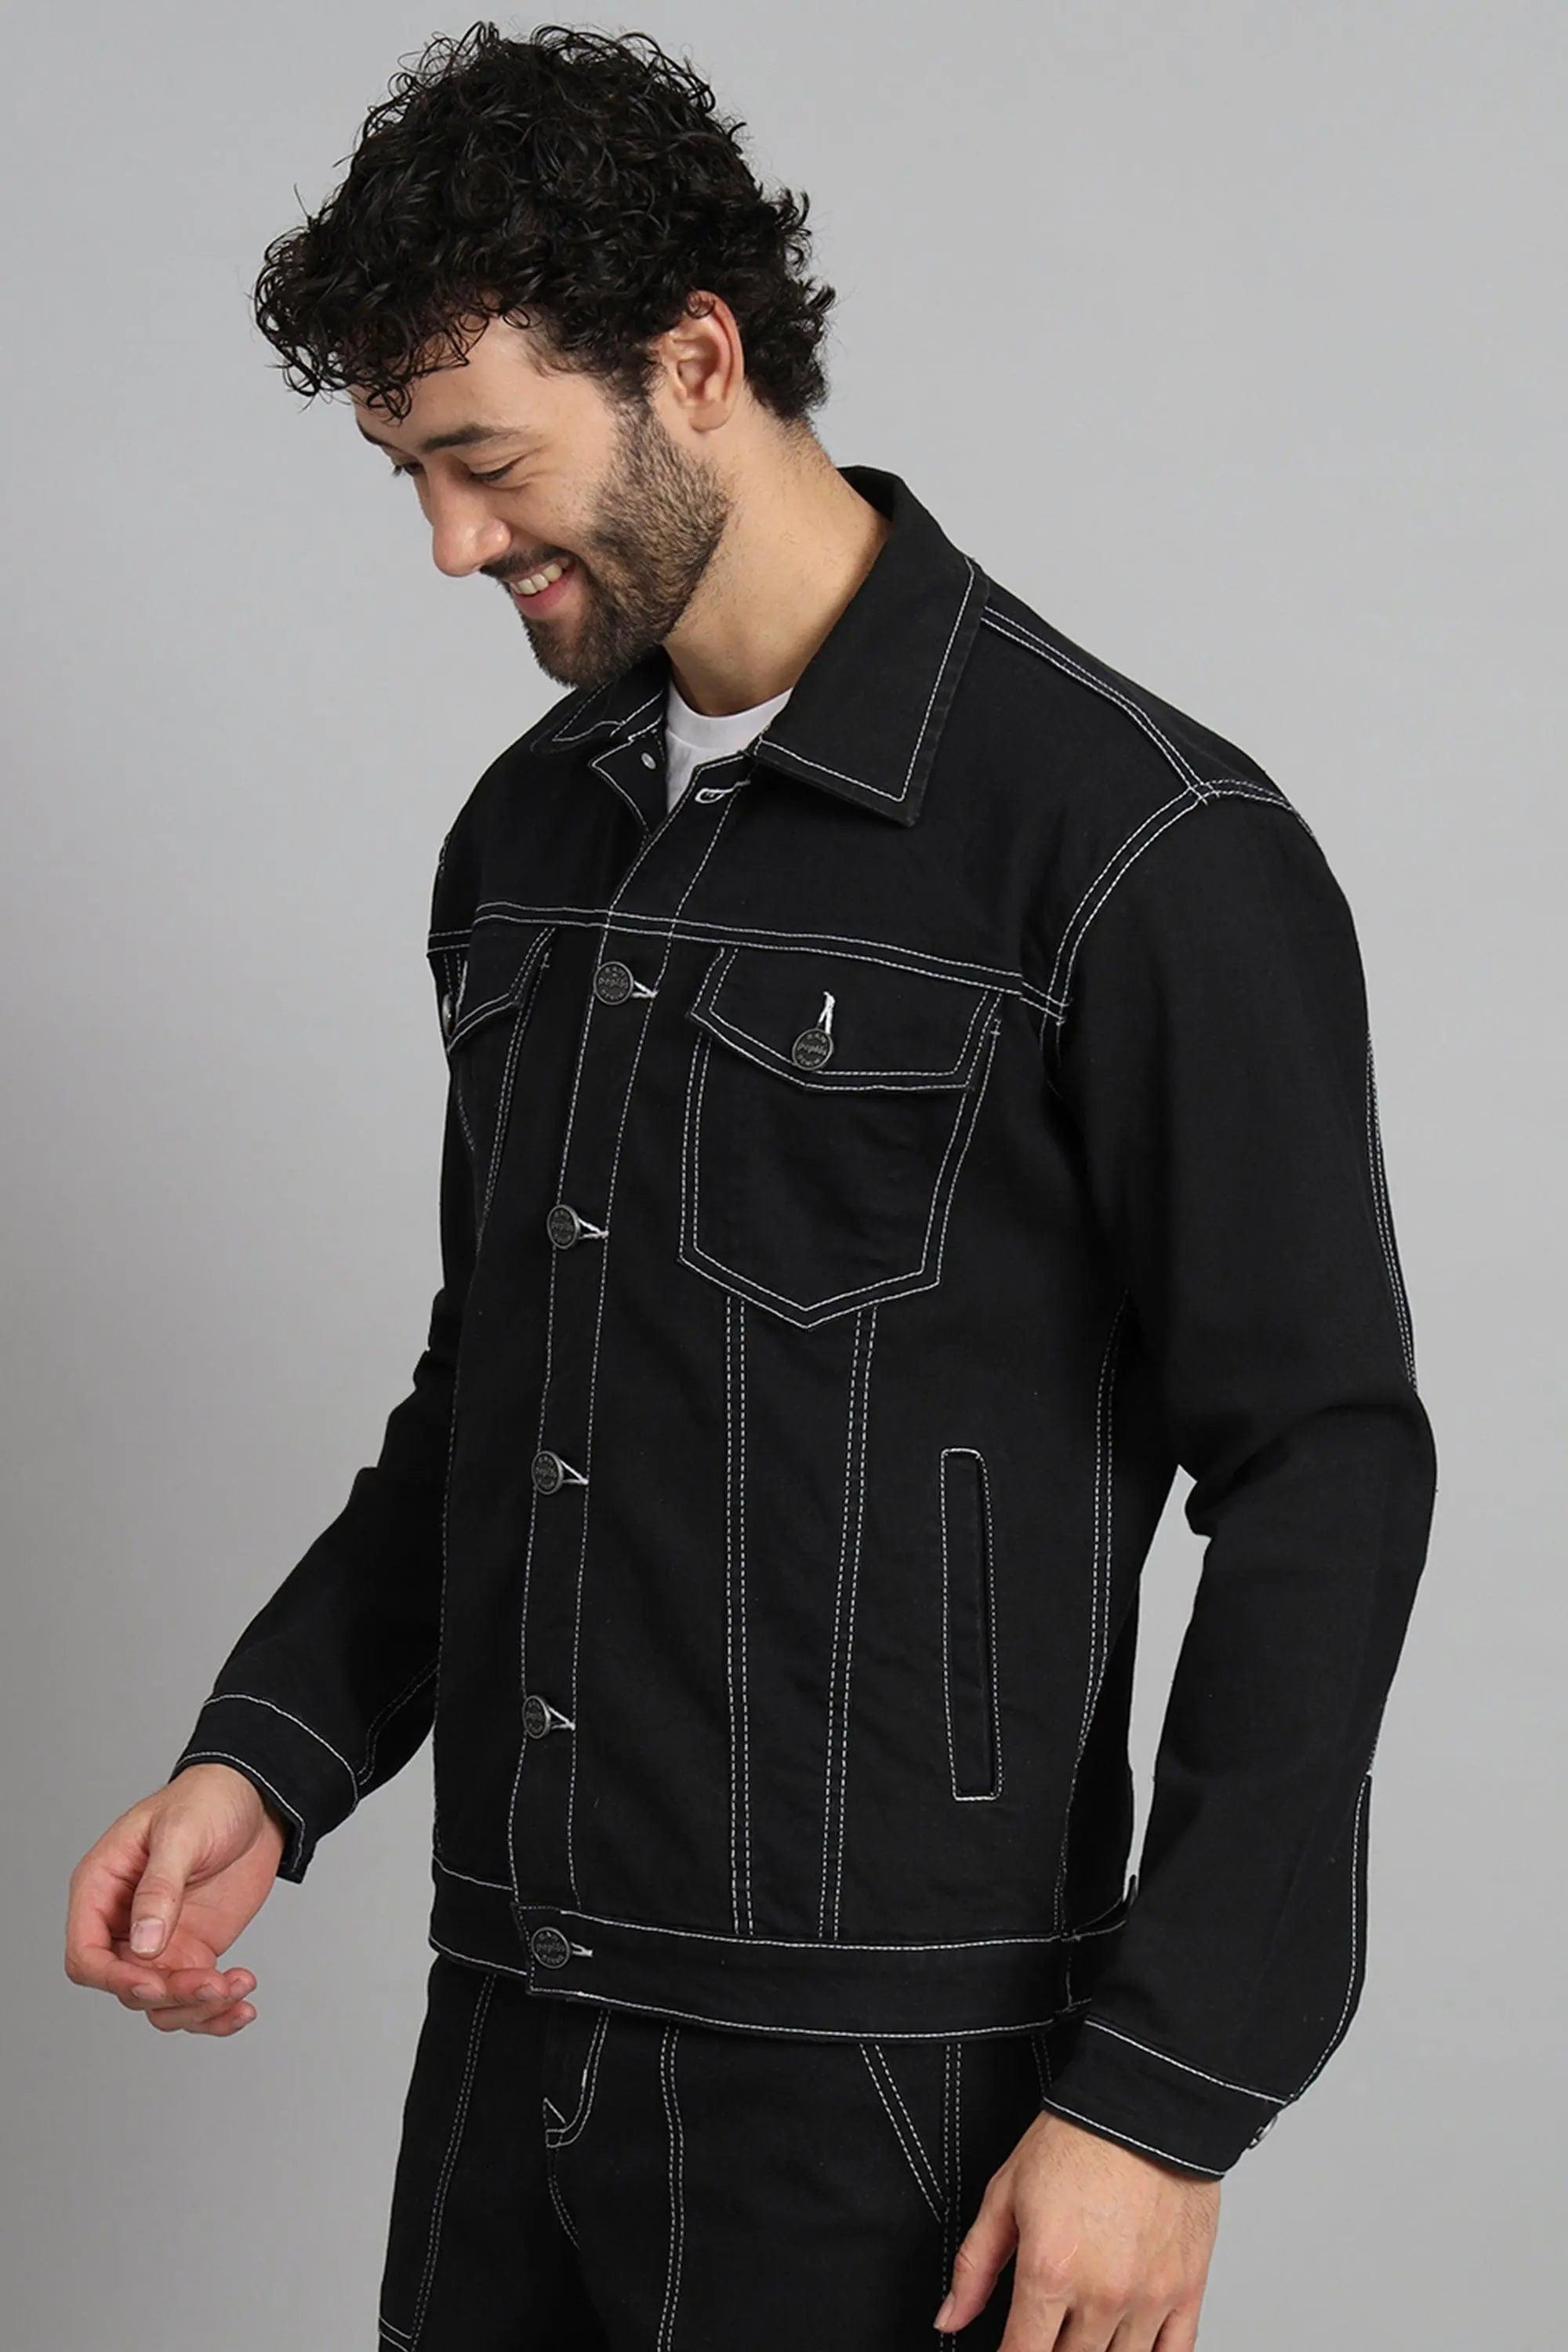 Buy Men's Black Washed Denim Jacket Online at Sassafras